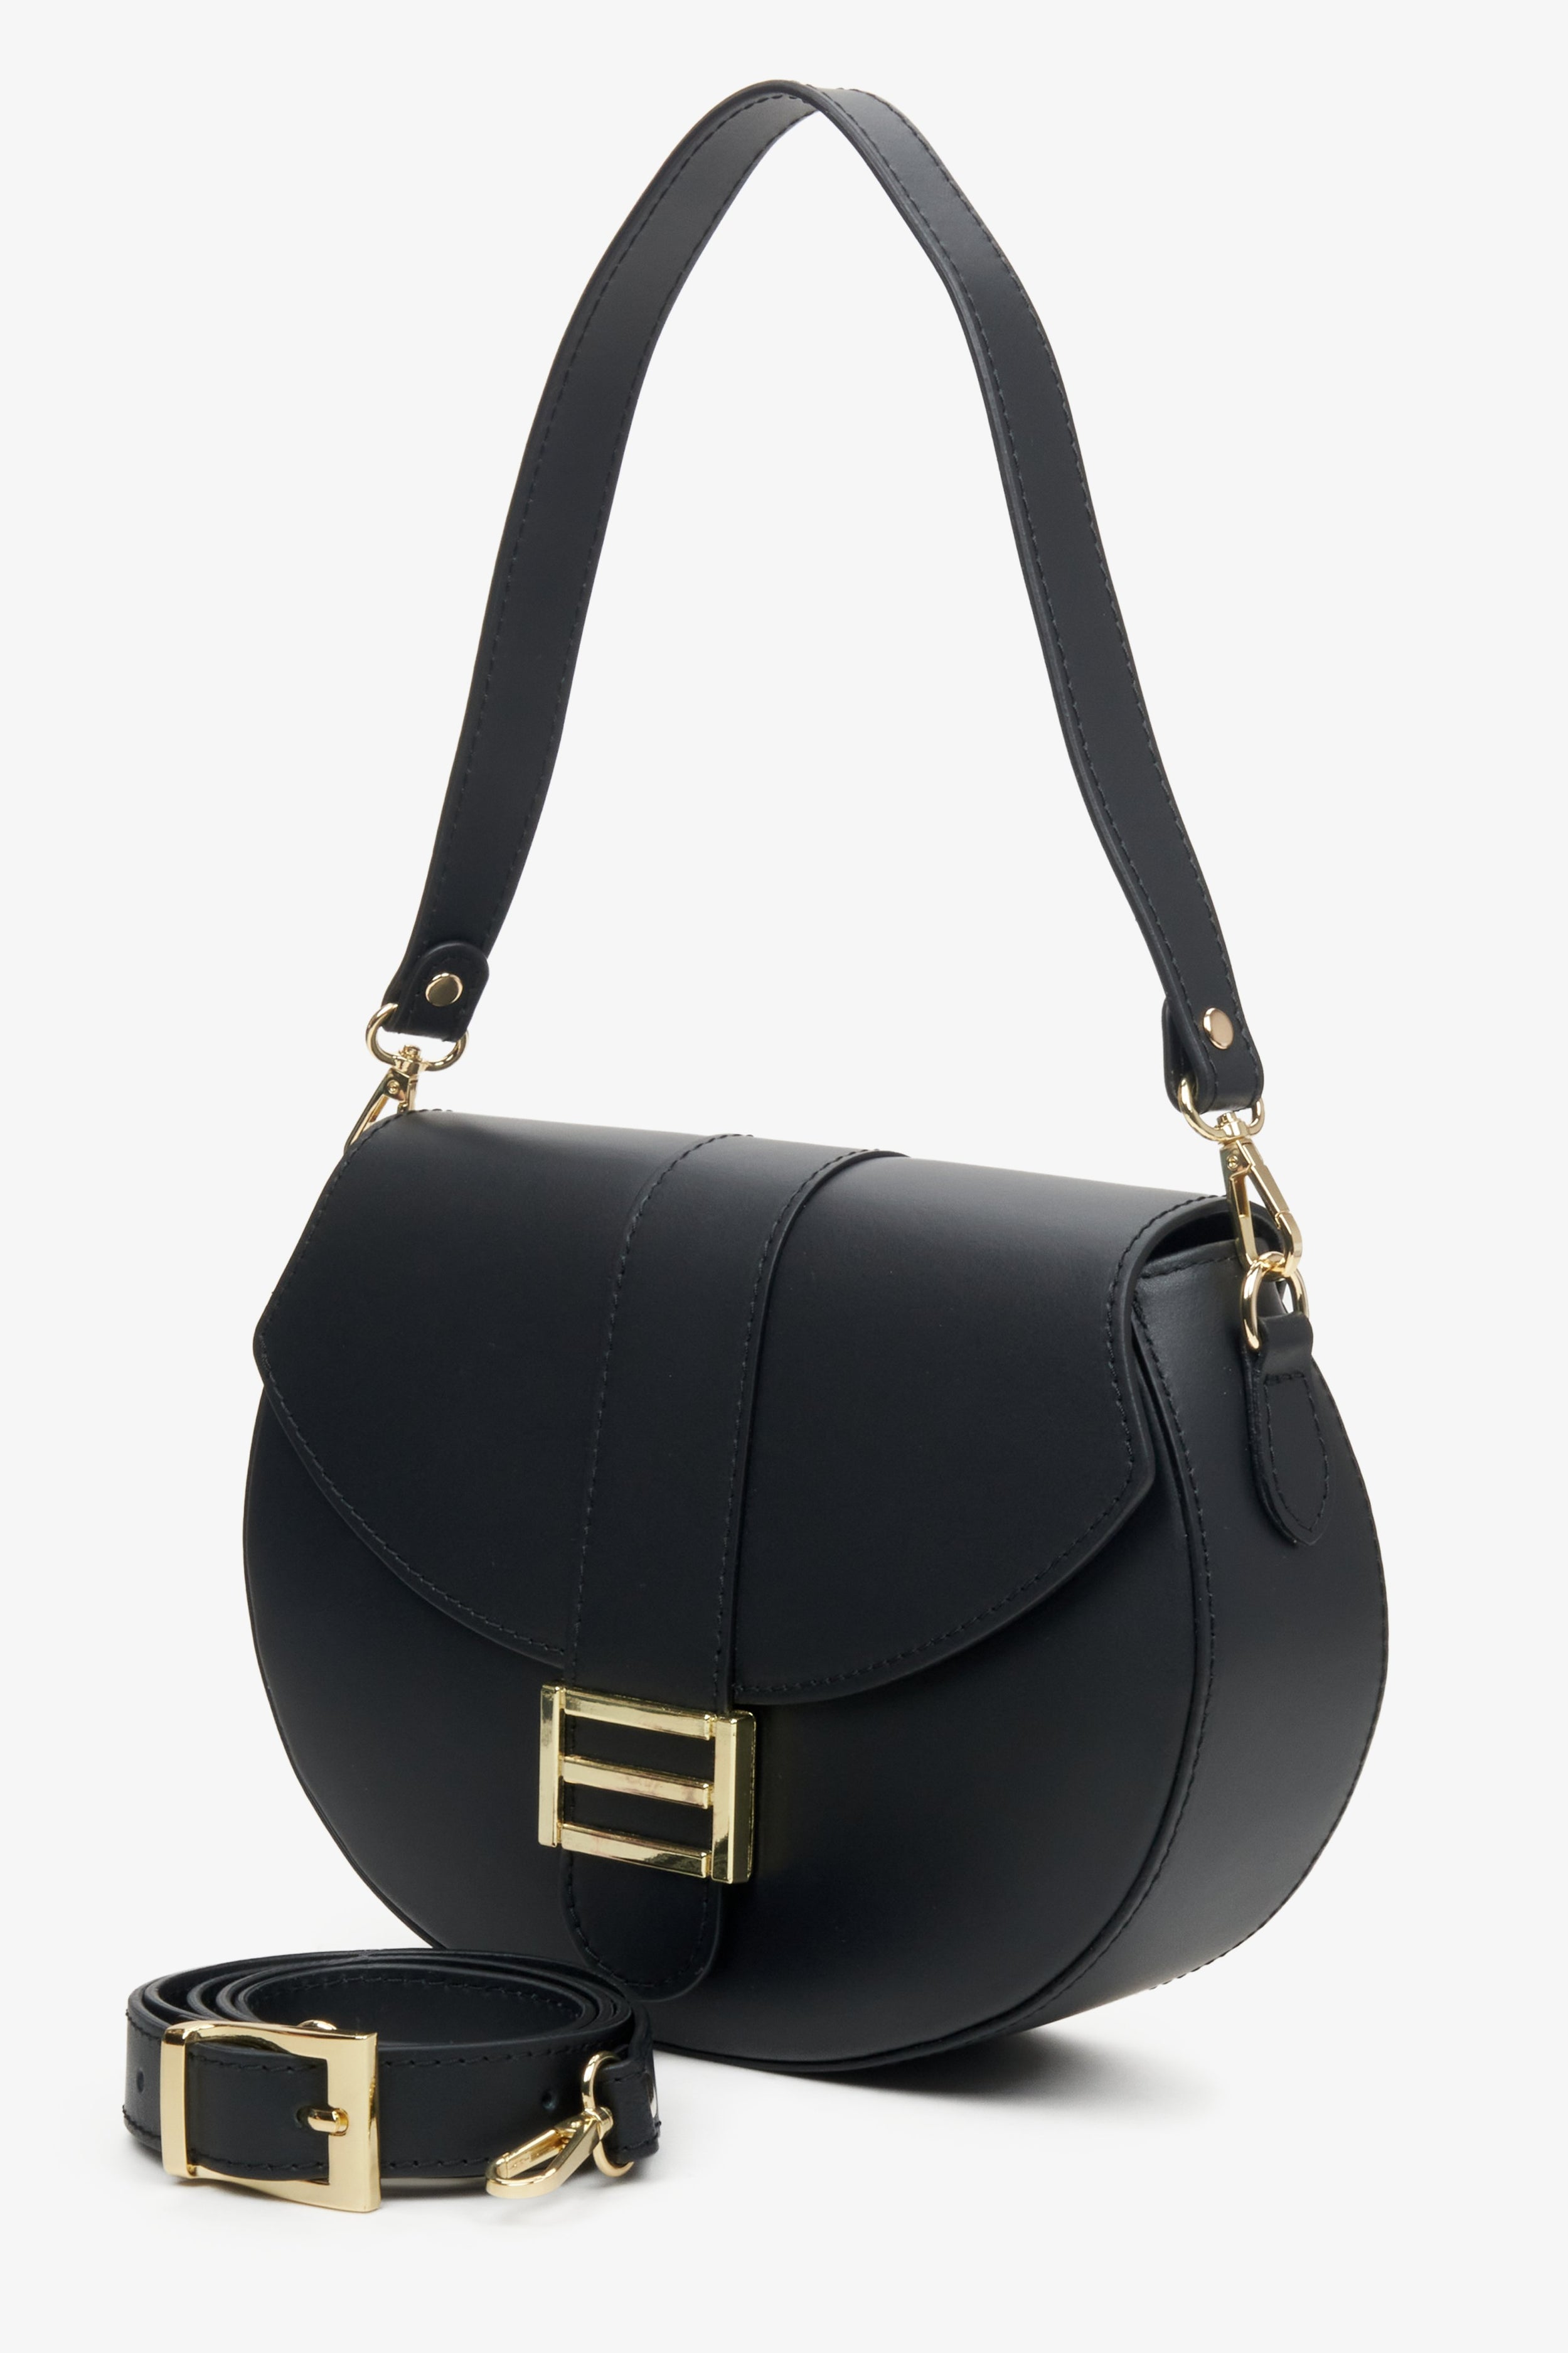 Estro: Czarna skórzana torebka damska w kształcie podkowy ze złotymi okuciami